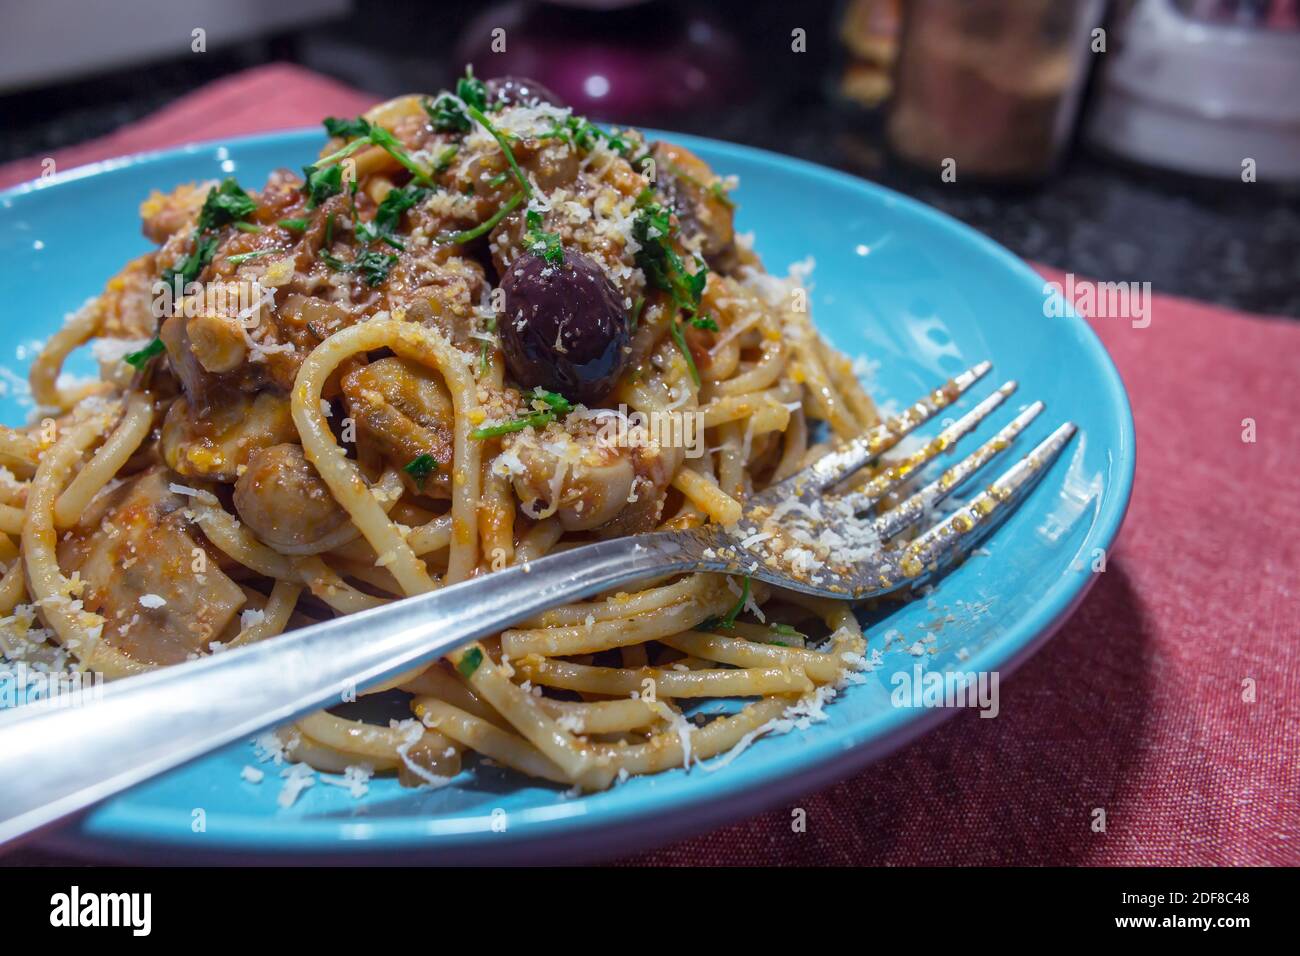 Plat typiquement italien : une généreuse portion de spaghetti à la sauce aux champignons dans une assiette bleue Banque D'Images